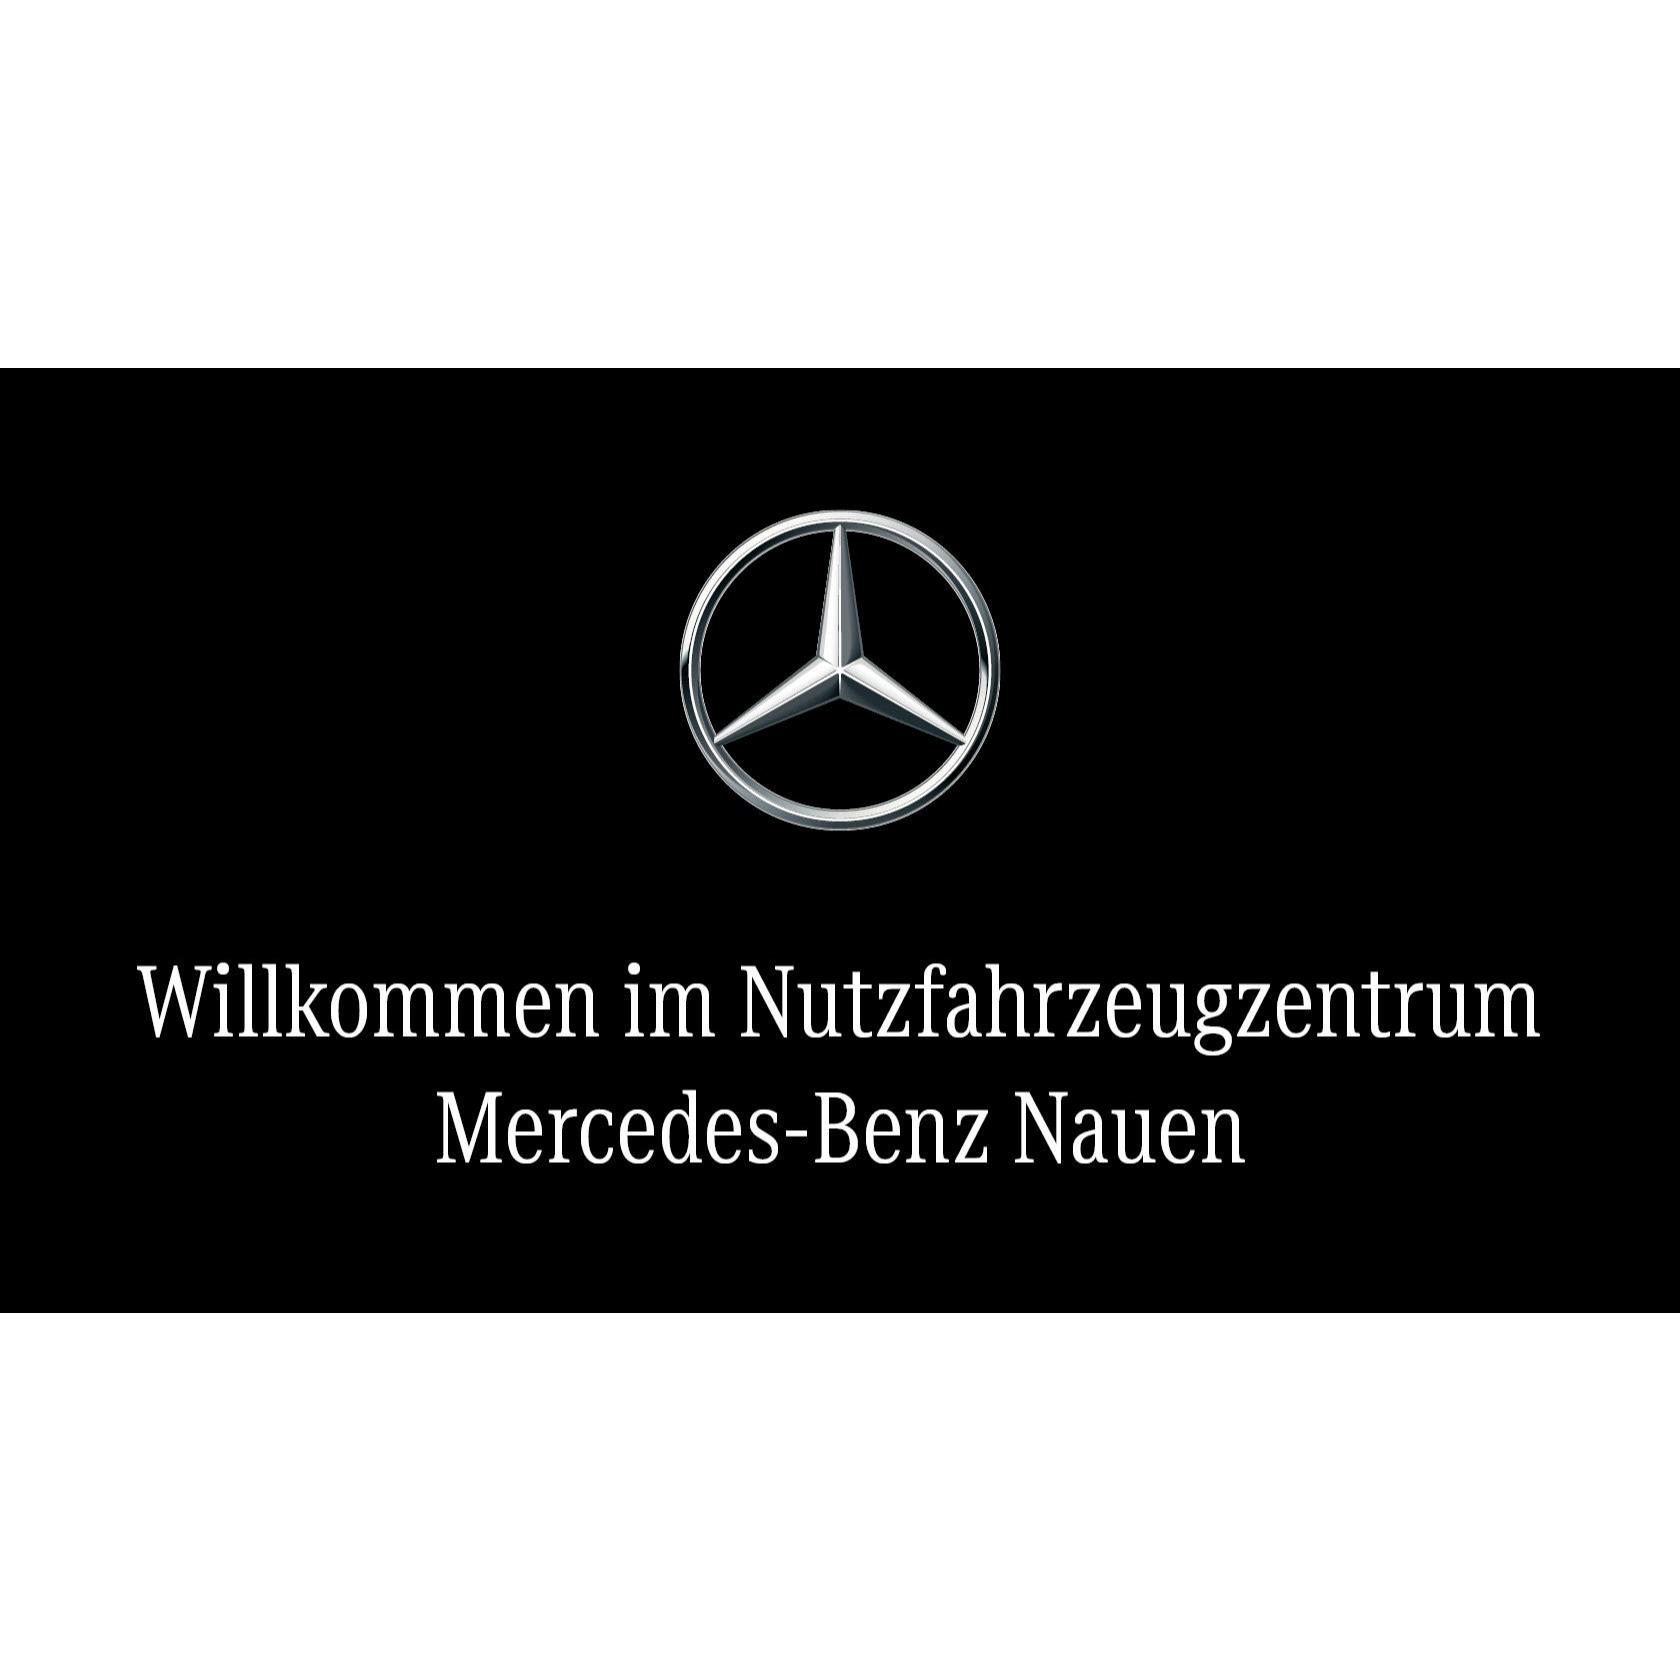 Daimler Truck AG Nutzfahrzeugzentrum Mercedes-Benz Berlin-Brandenburg - Zweigbetrieb Nauen in Nauen in Brandenburg - Logo